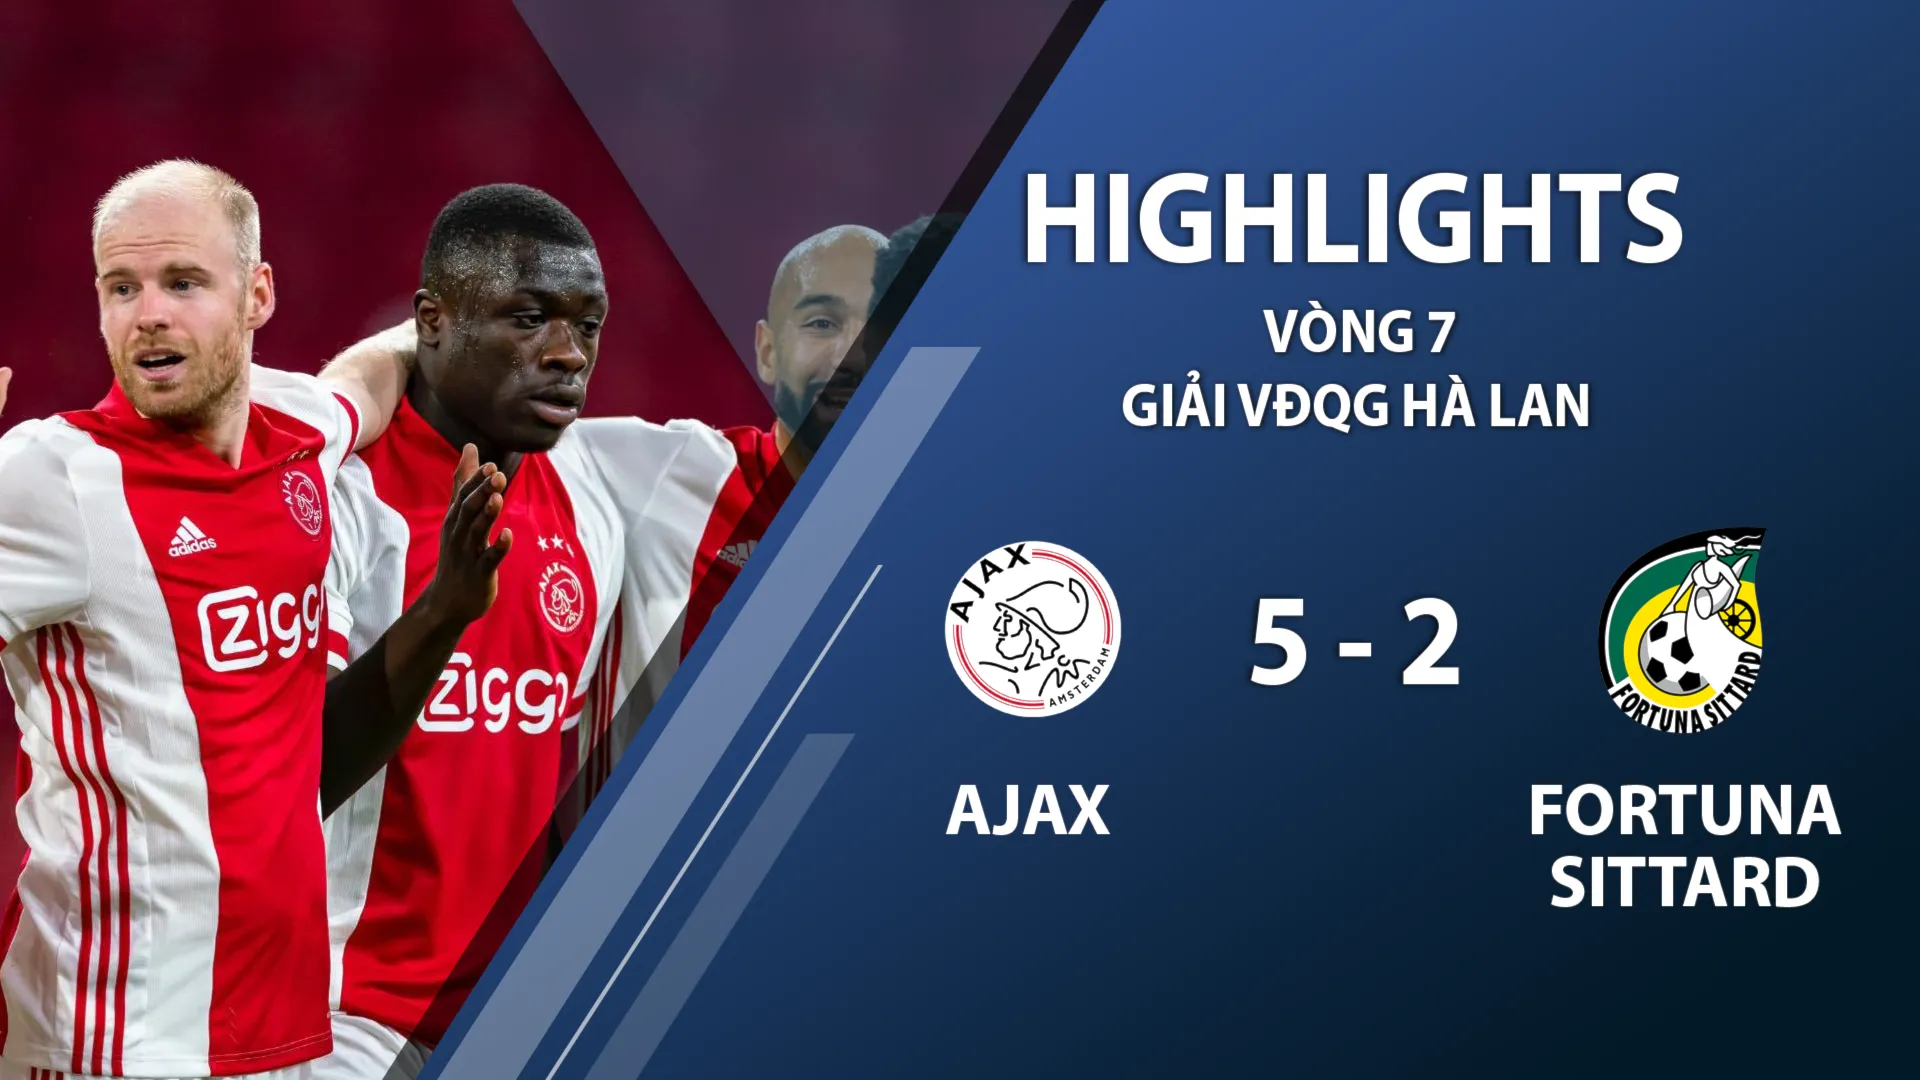 Highlights Ajax 5-2 Fortuna Sittard (vòng 7 giải VĐQG Hà Lan 2020/21)